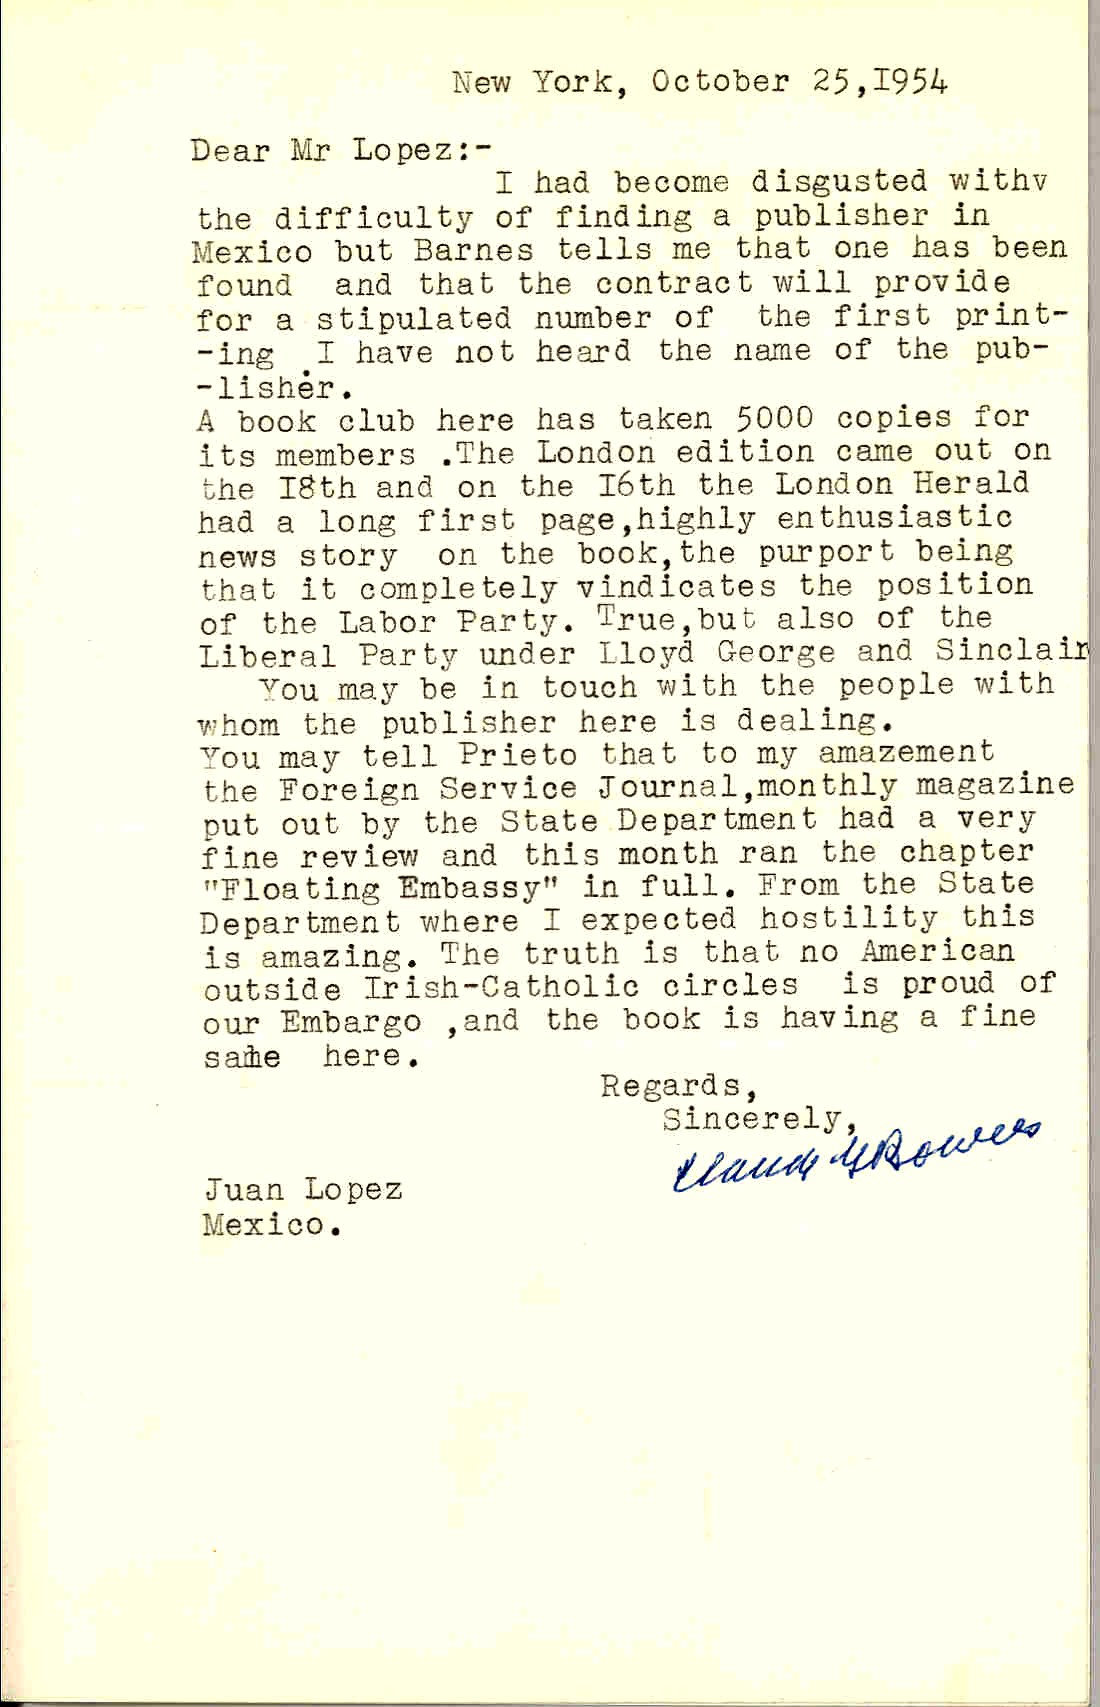 Carta de Bowers en la que afirma que su agente ha encontrado un editor para su libro en México, le comenta la gran acogida de las ediciones en Estados Unidos e Inglaterra. Le cuenta la actitud de su país respecto de España